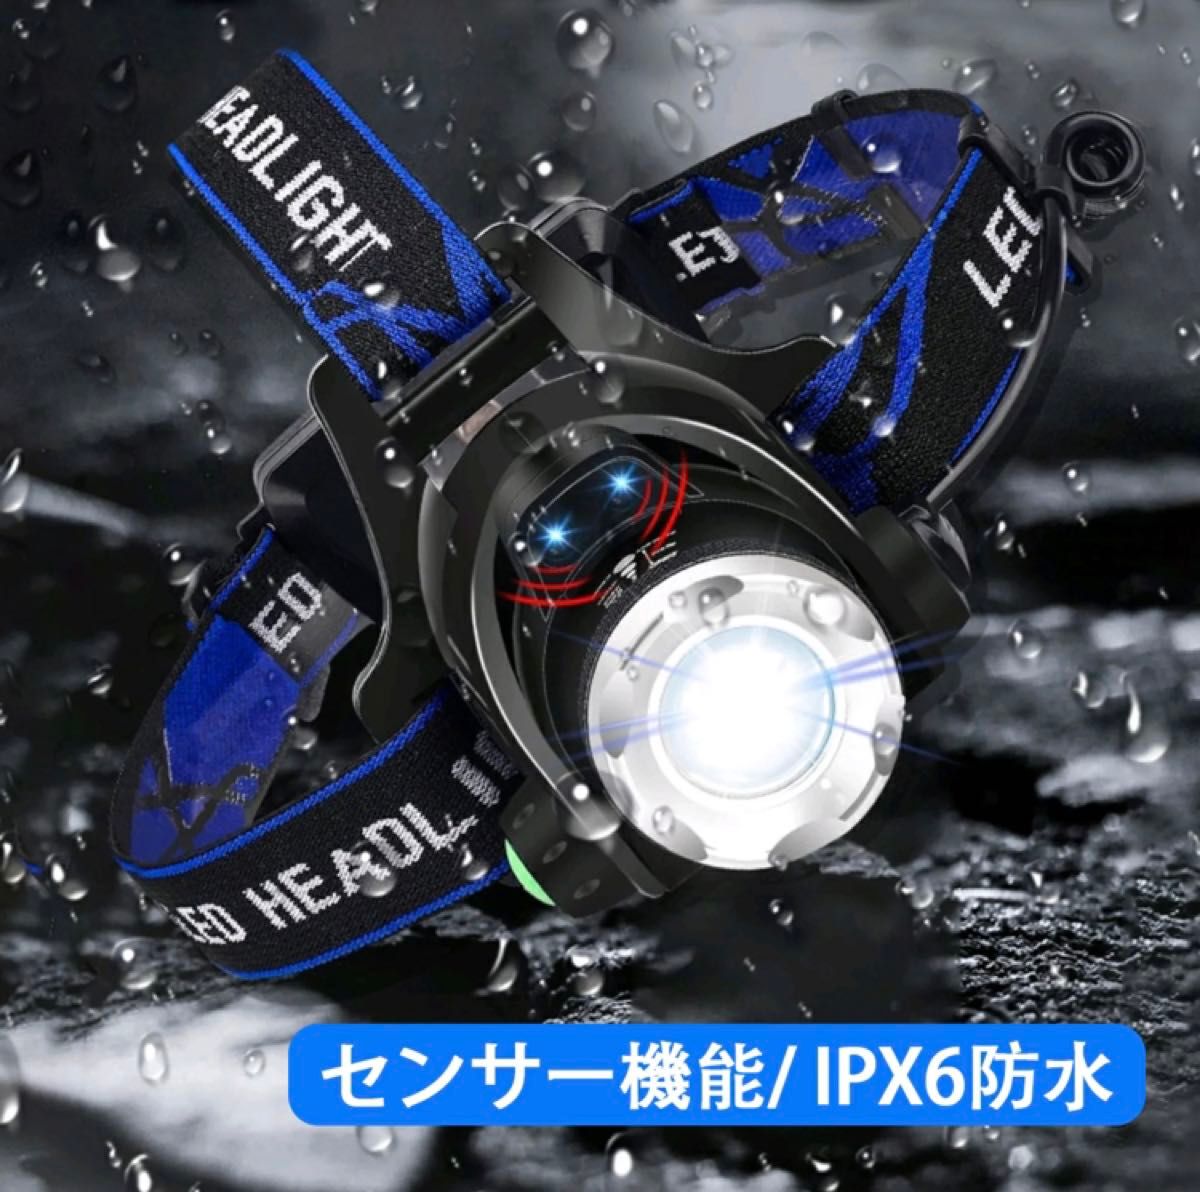 LEDヘッドライト 充電式 高輝度 ヘッドランプ 人感センサー 防水 防災 ヘルメット ライト IPX6防水 